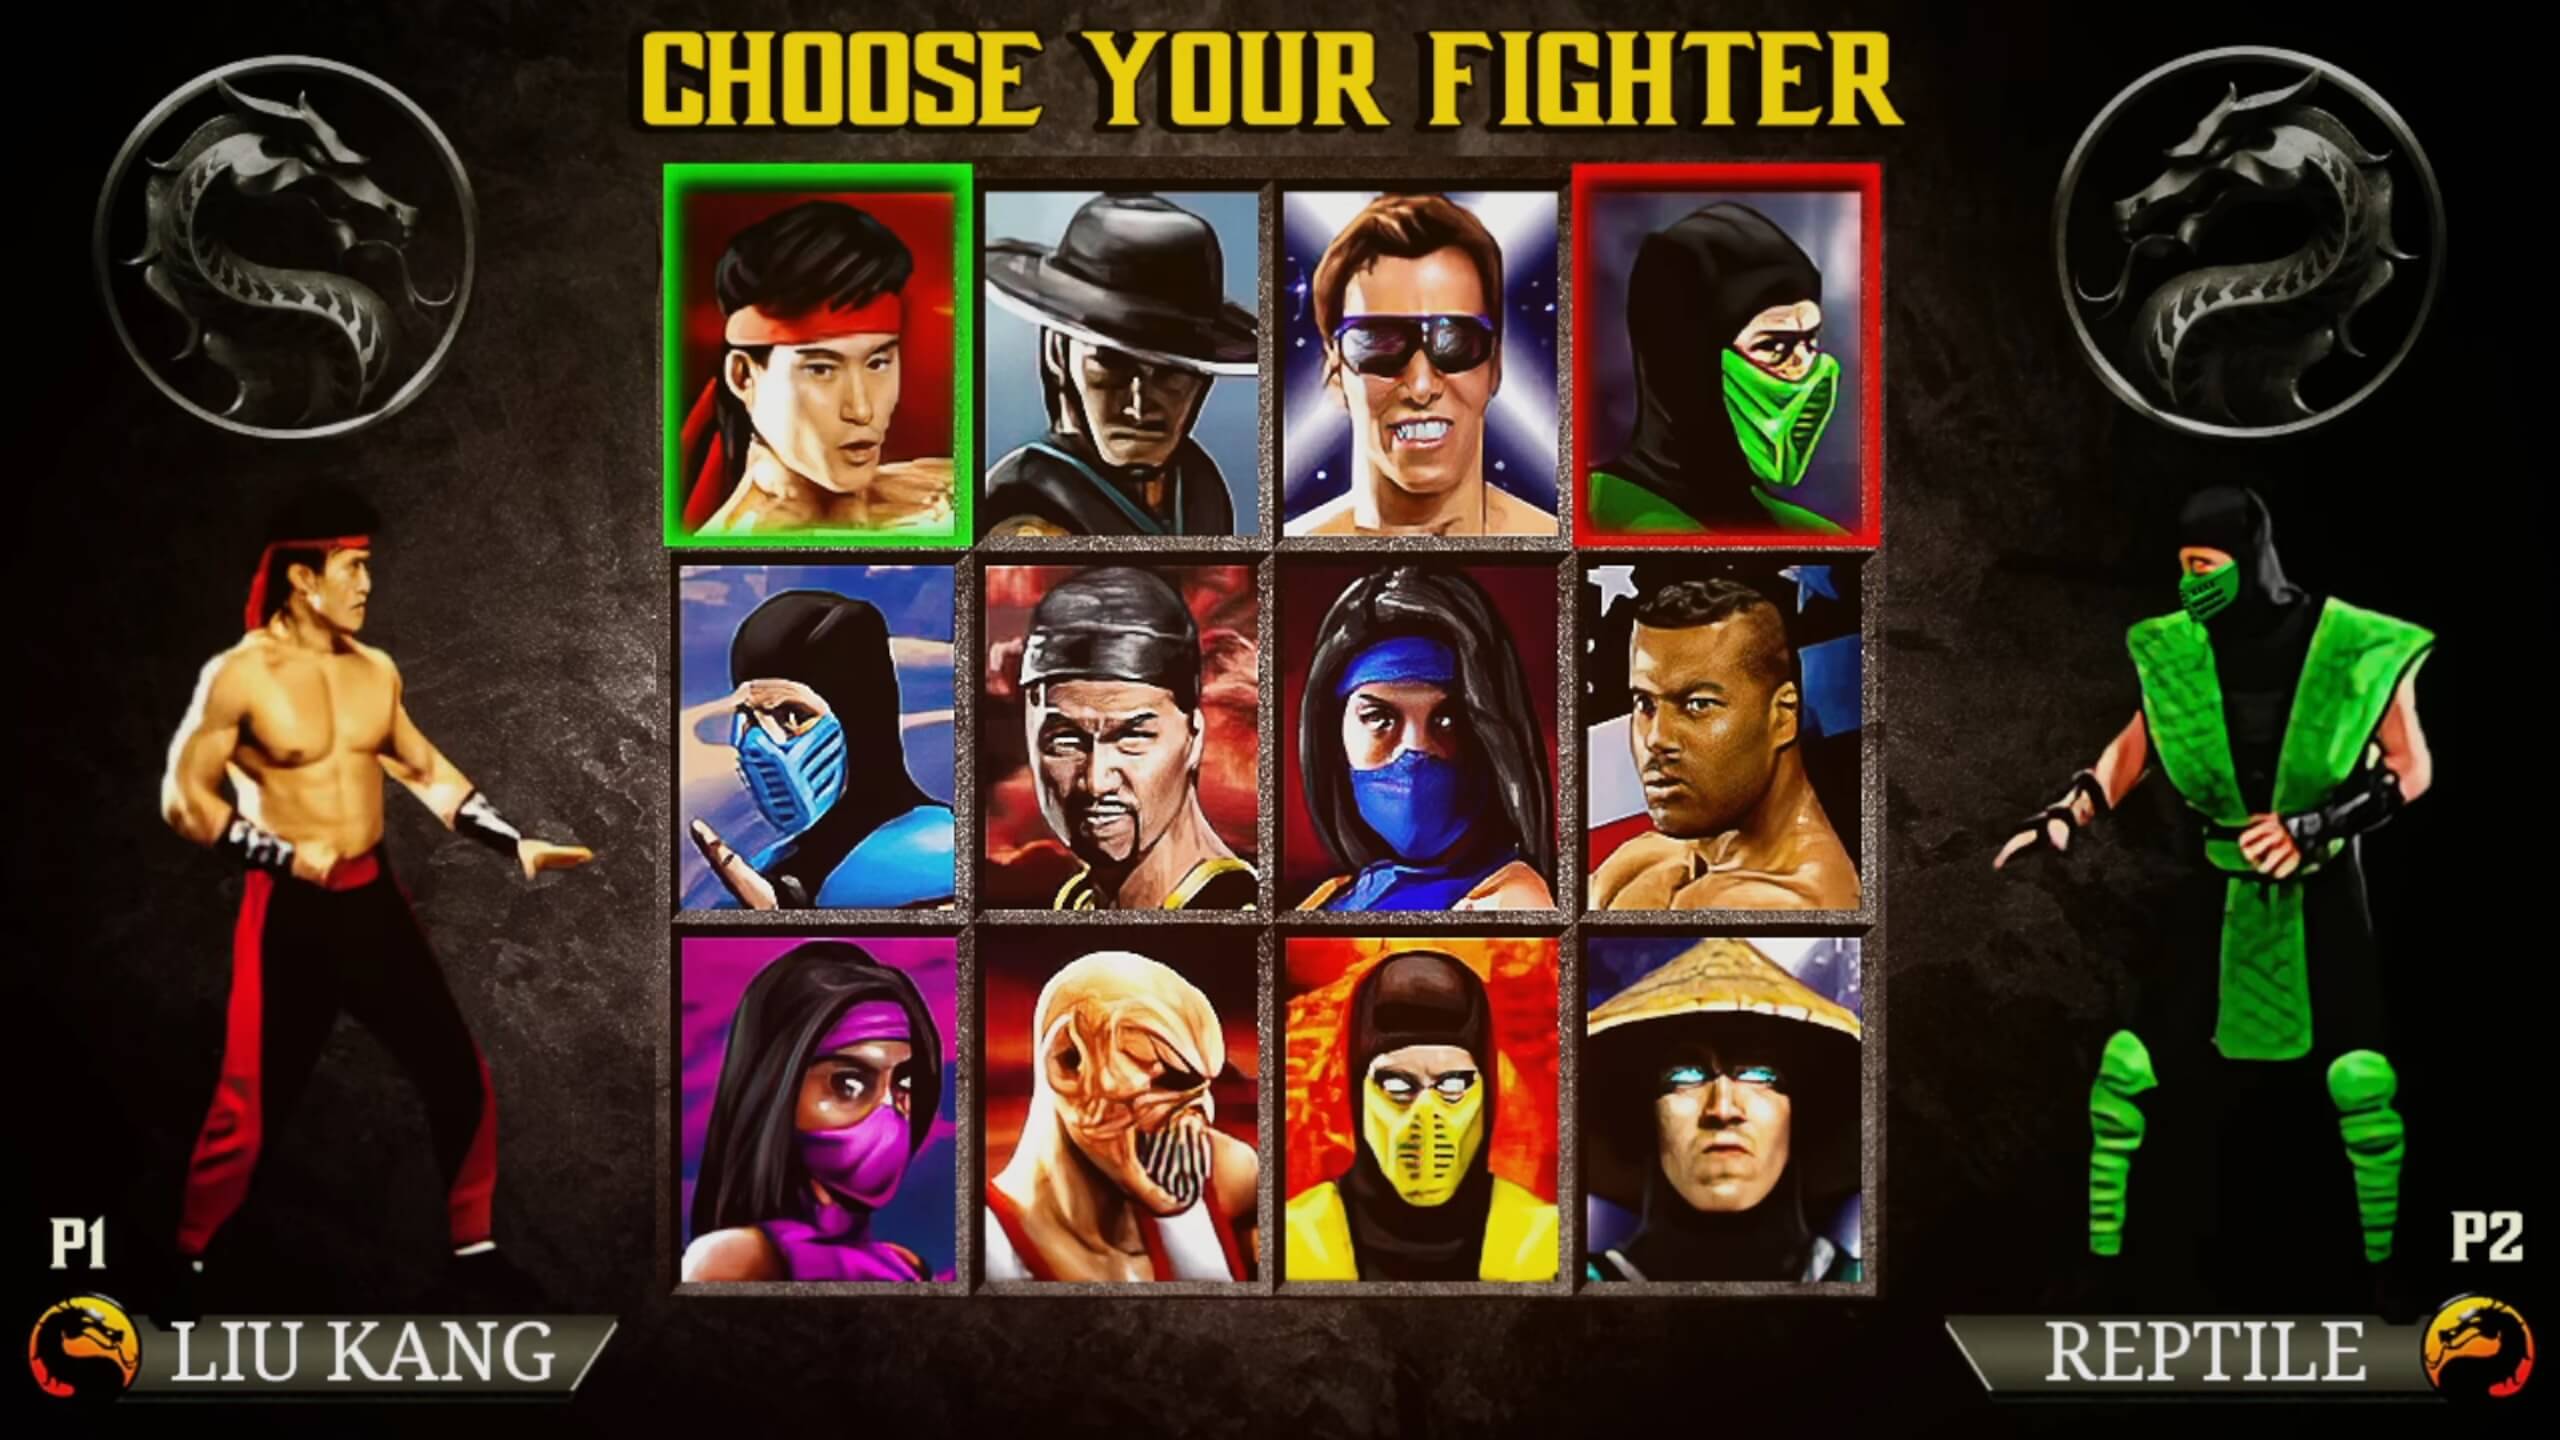 Play Mortal Kombat Mugen Games Online - Play Mortal Kombat Mugen